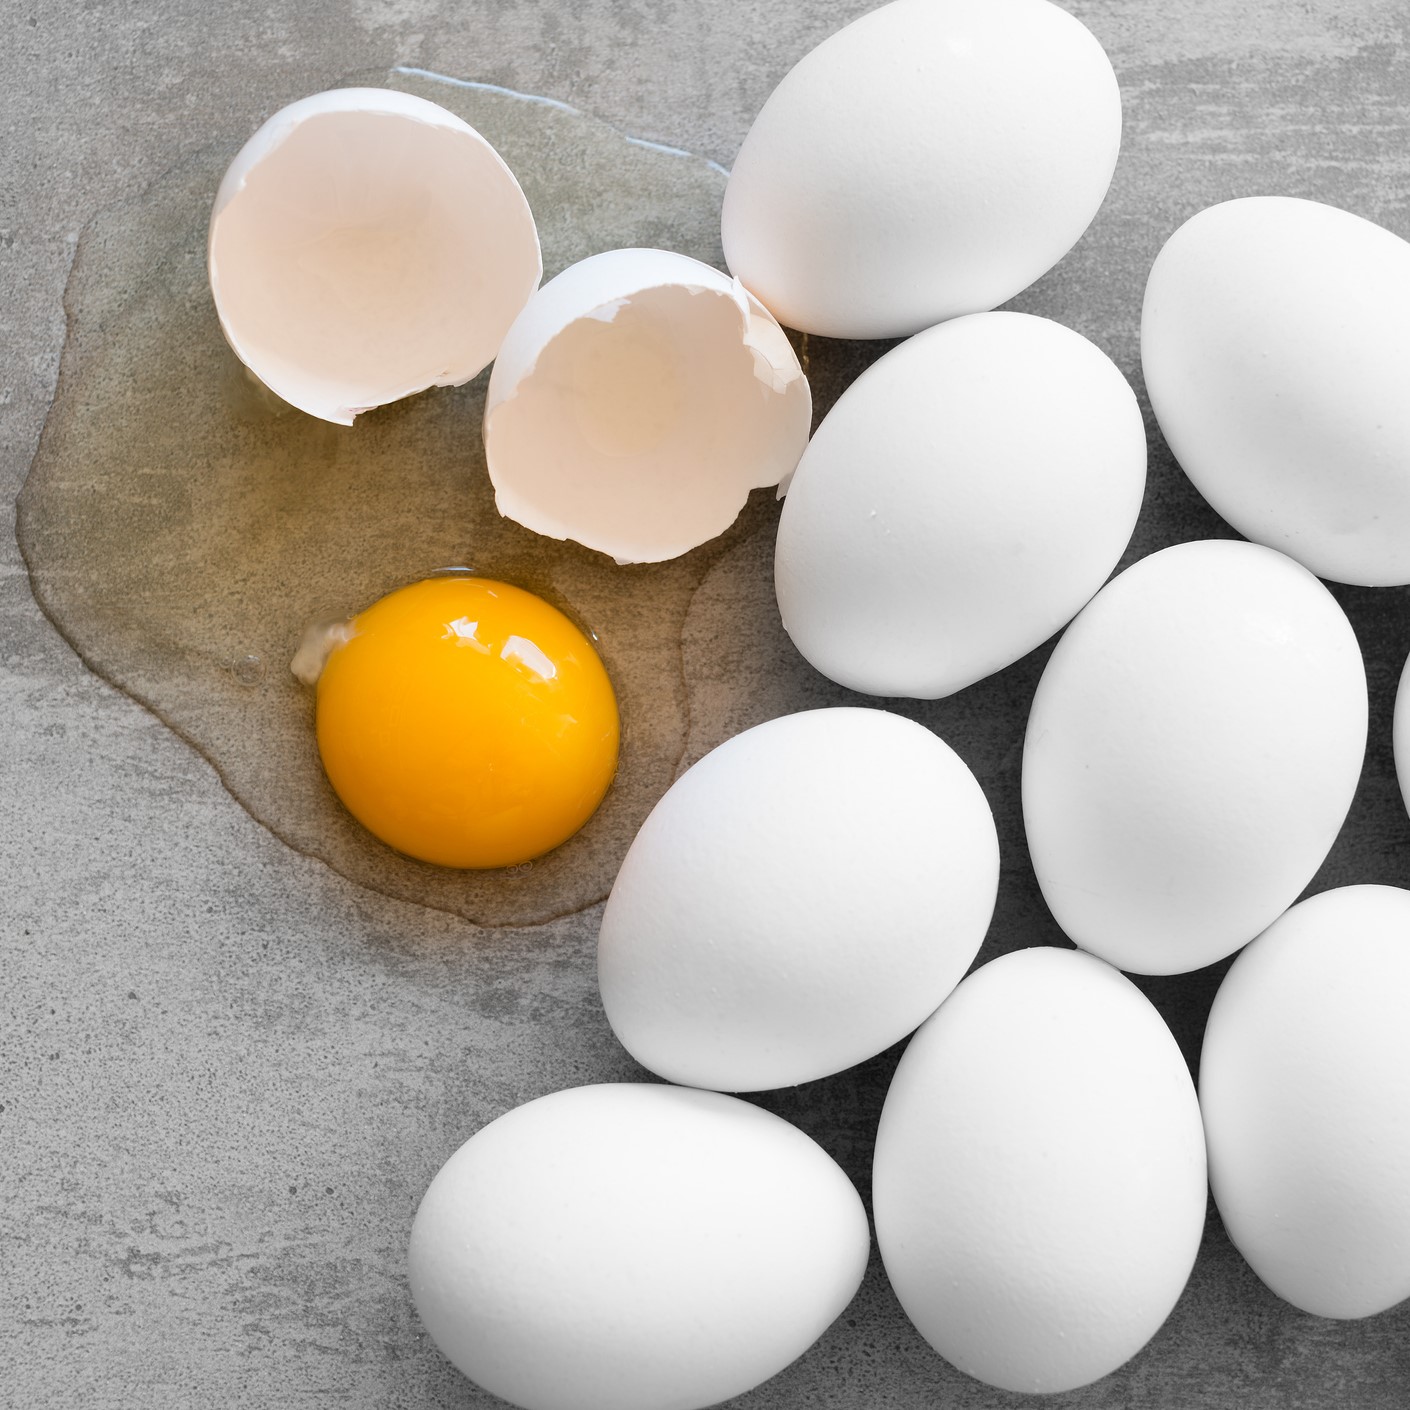 White eggs, one broken egg showing yolk